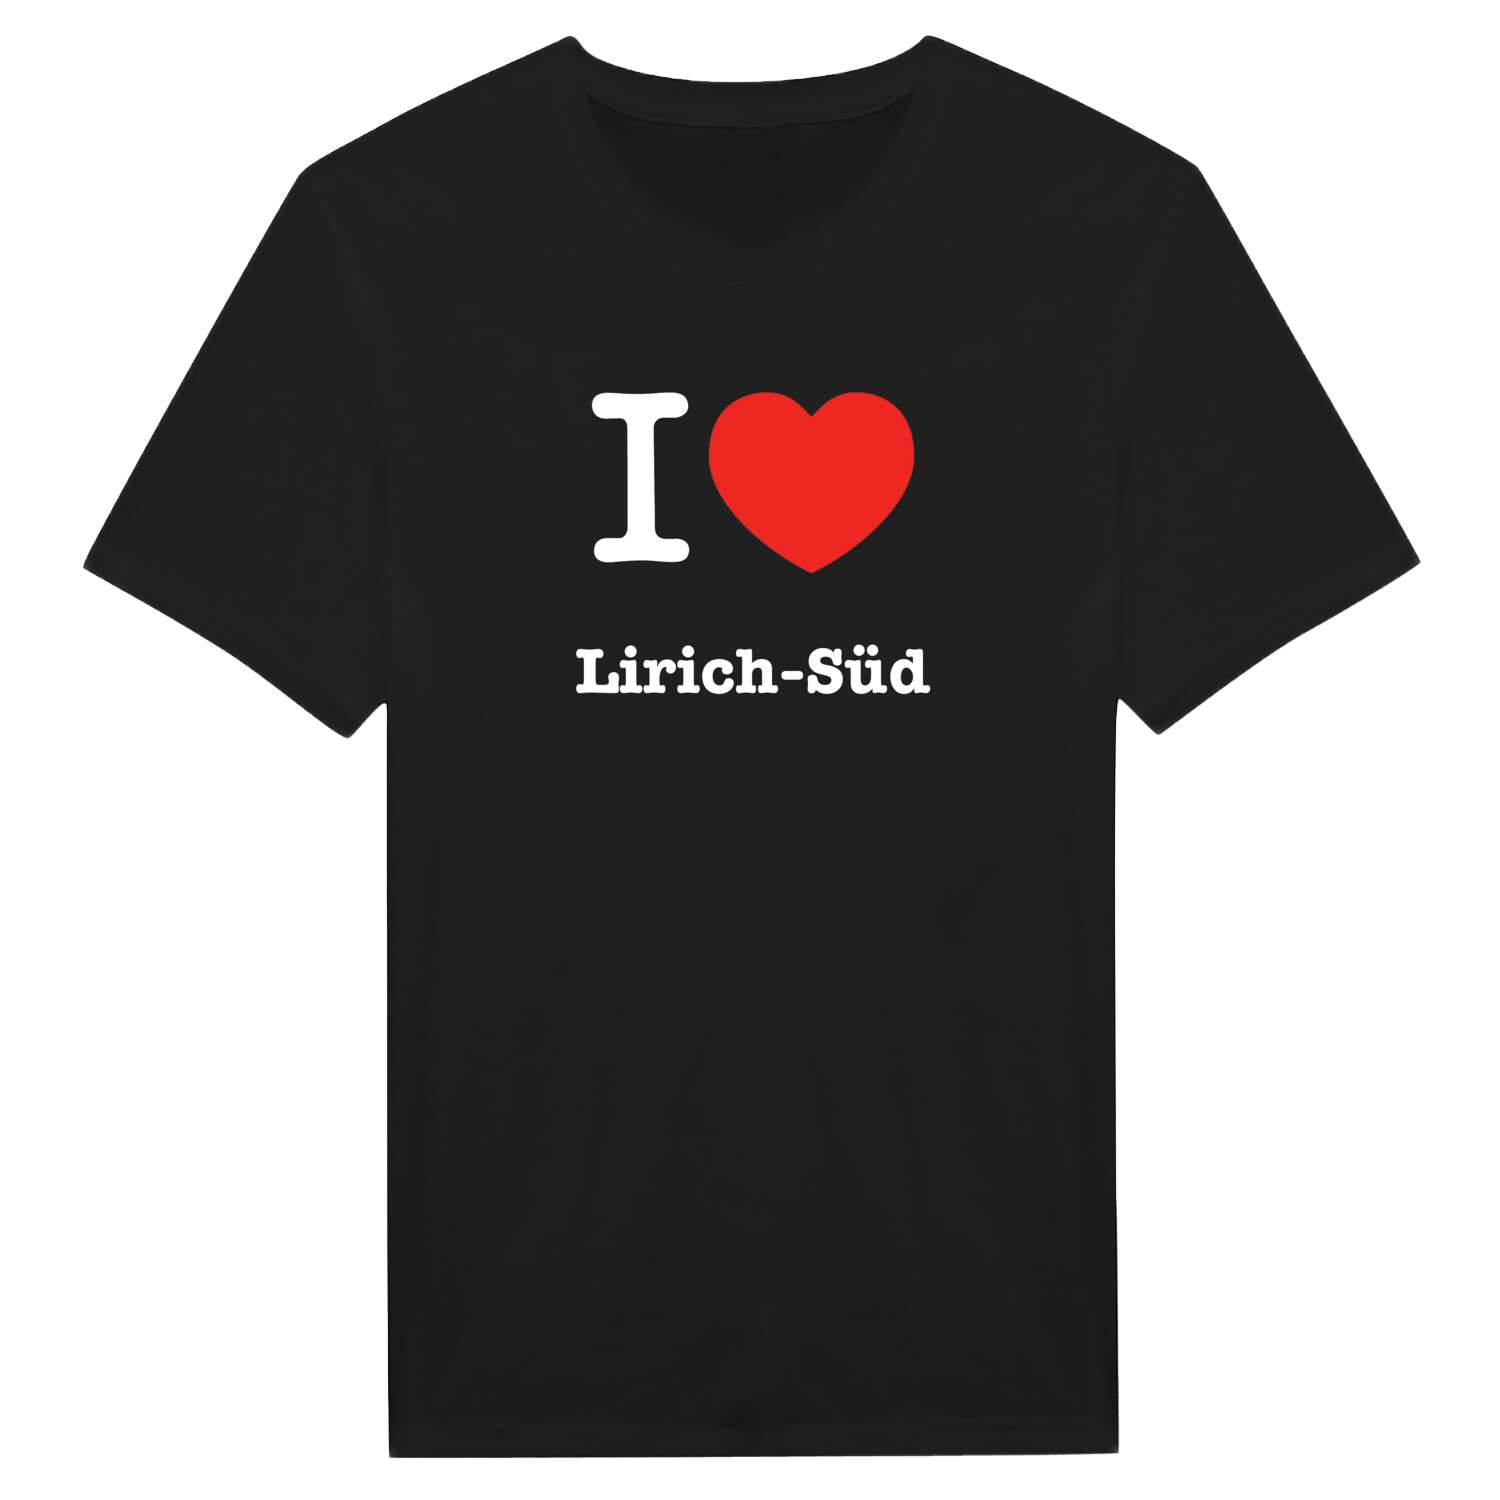 Lirich-Süd T-Shirt »I love«